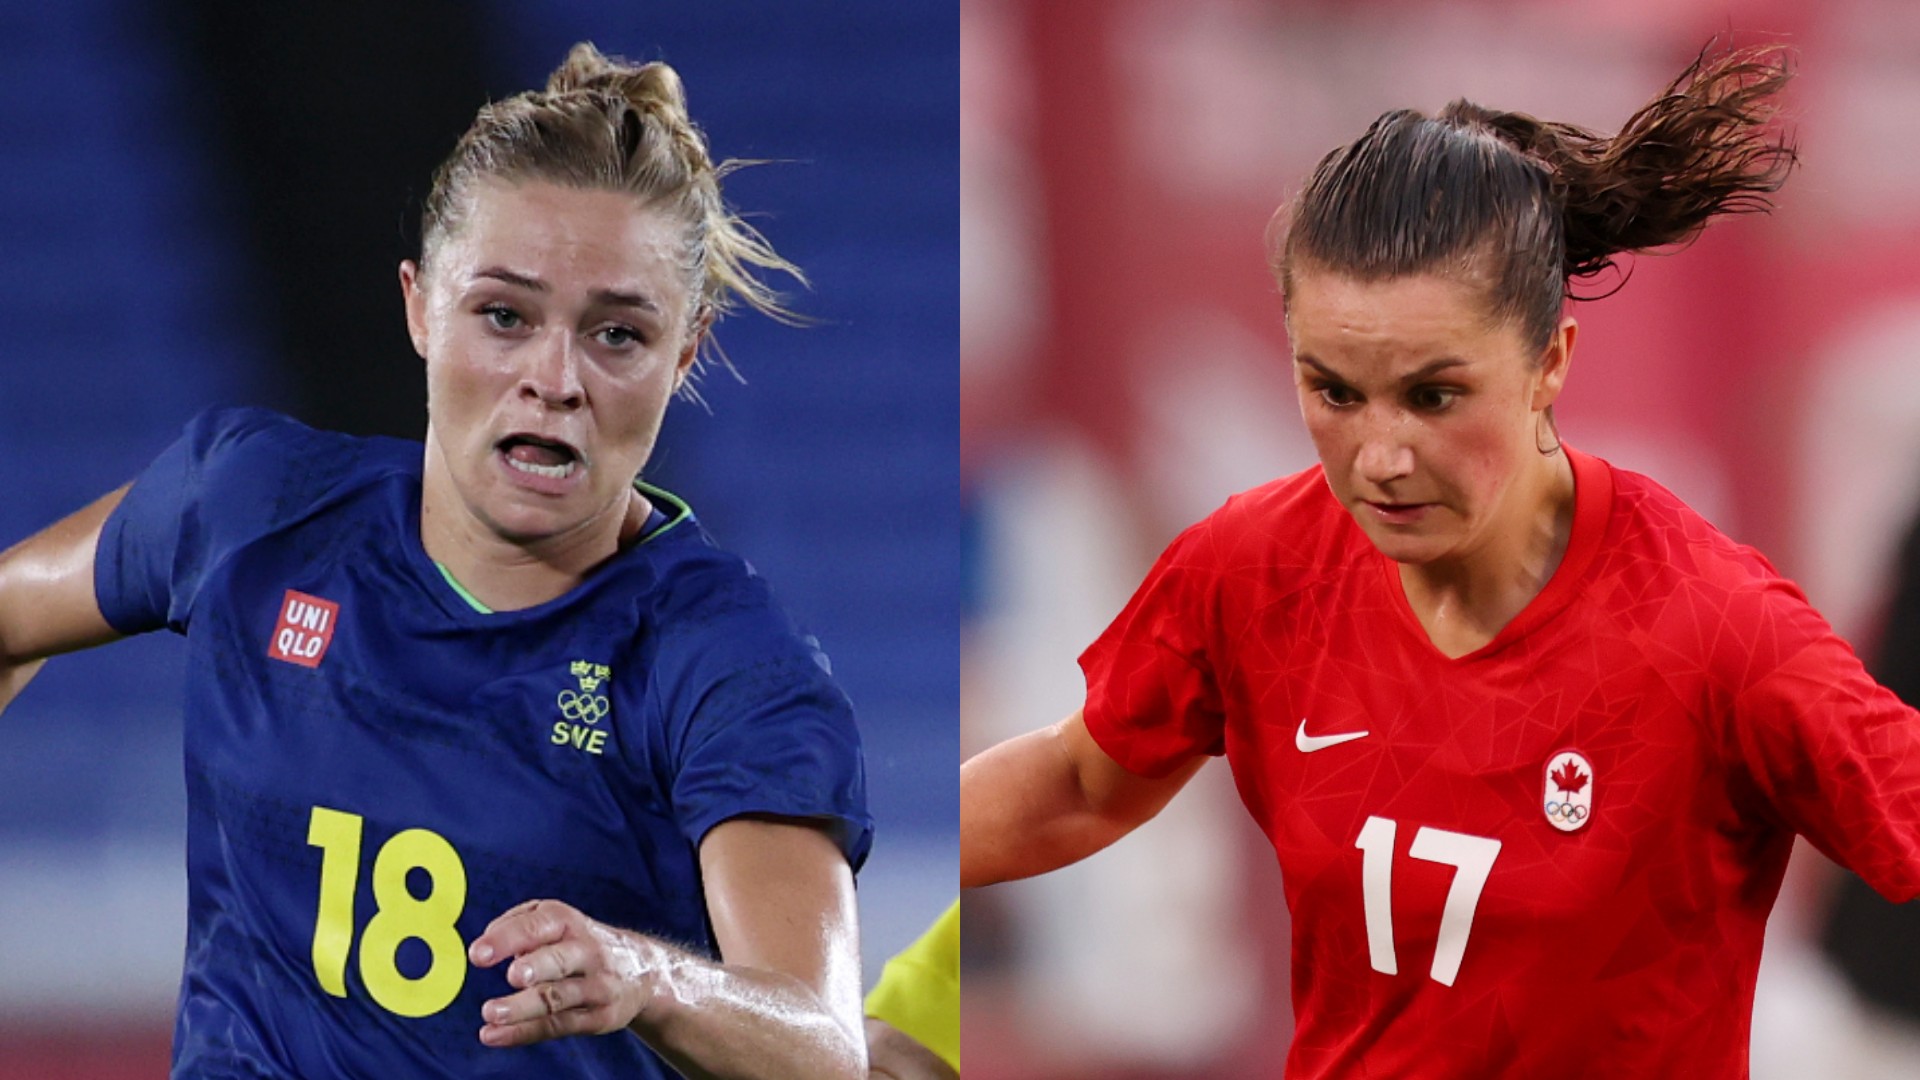 8月6日テレビ放送 女子サッカー決勝 スウェーデンvsカナダの地上波tv中継予定 Goal Com